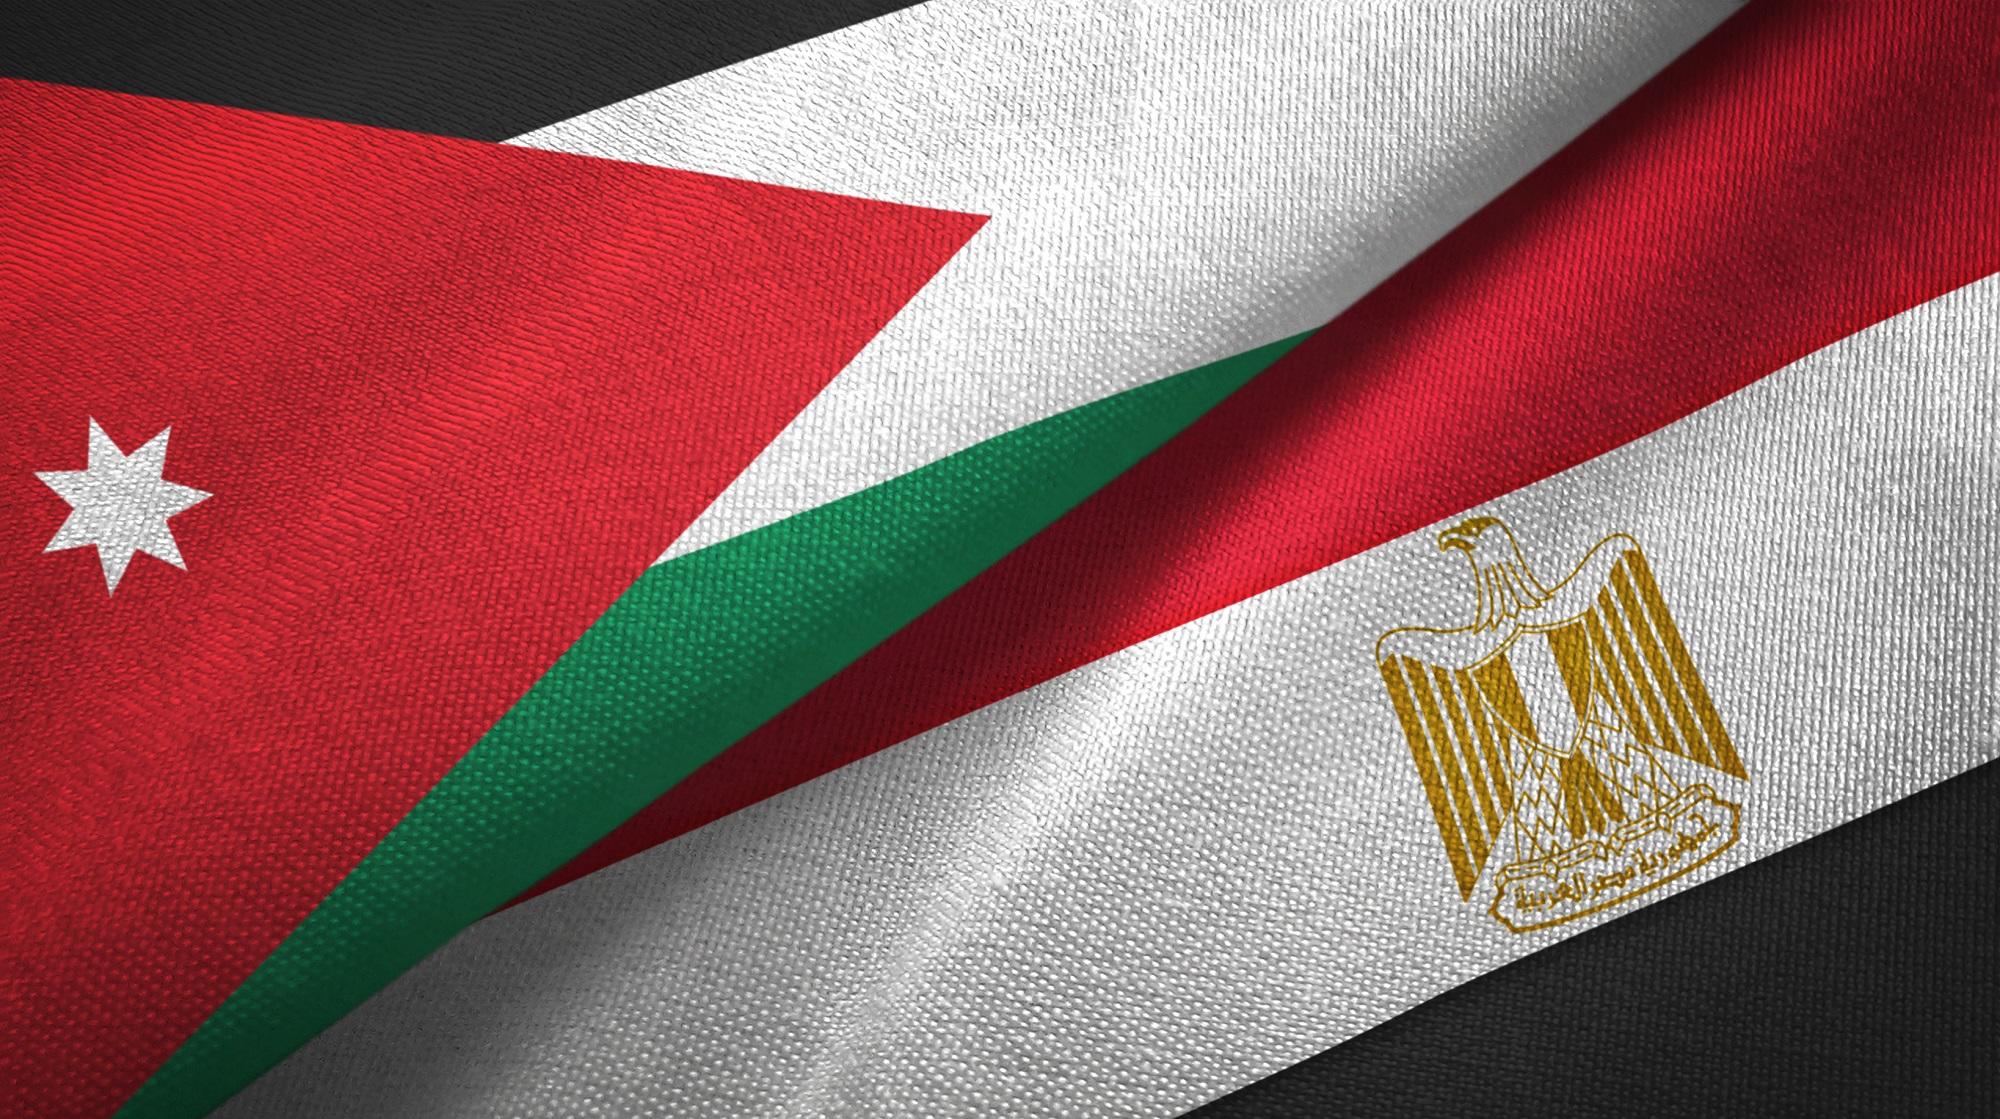 بلغ حجم التبادل التجاري بين الأردن ومصر عام 2018 نحو 470.3 مليون دينار. (shutterstock)